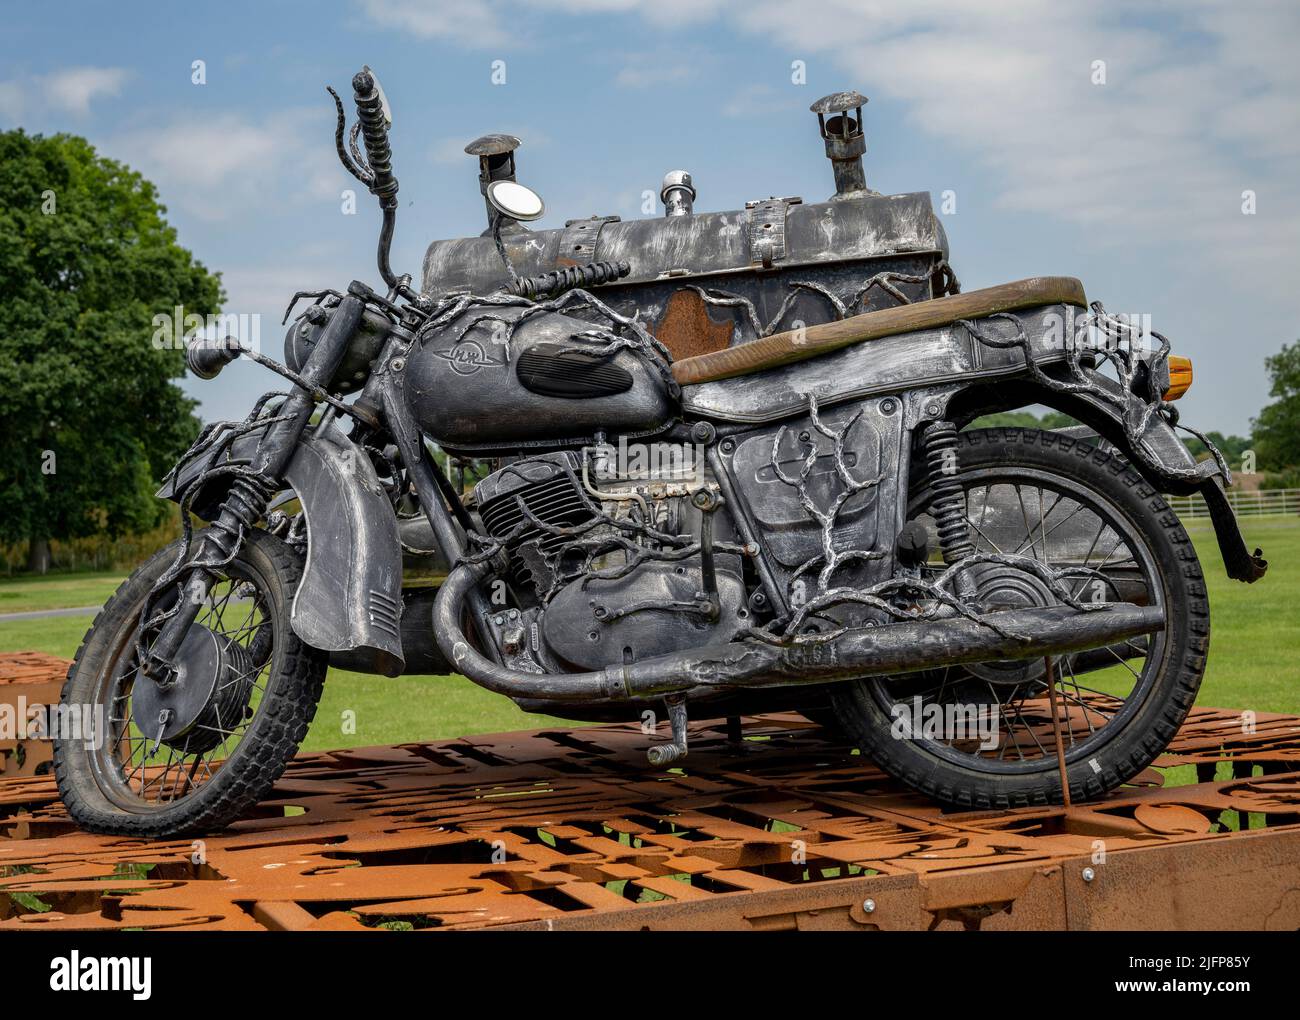 The British Ironwork Centre, Exposición de motocicletas/Escultura Foto de stock